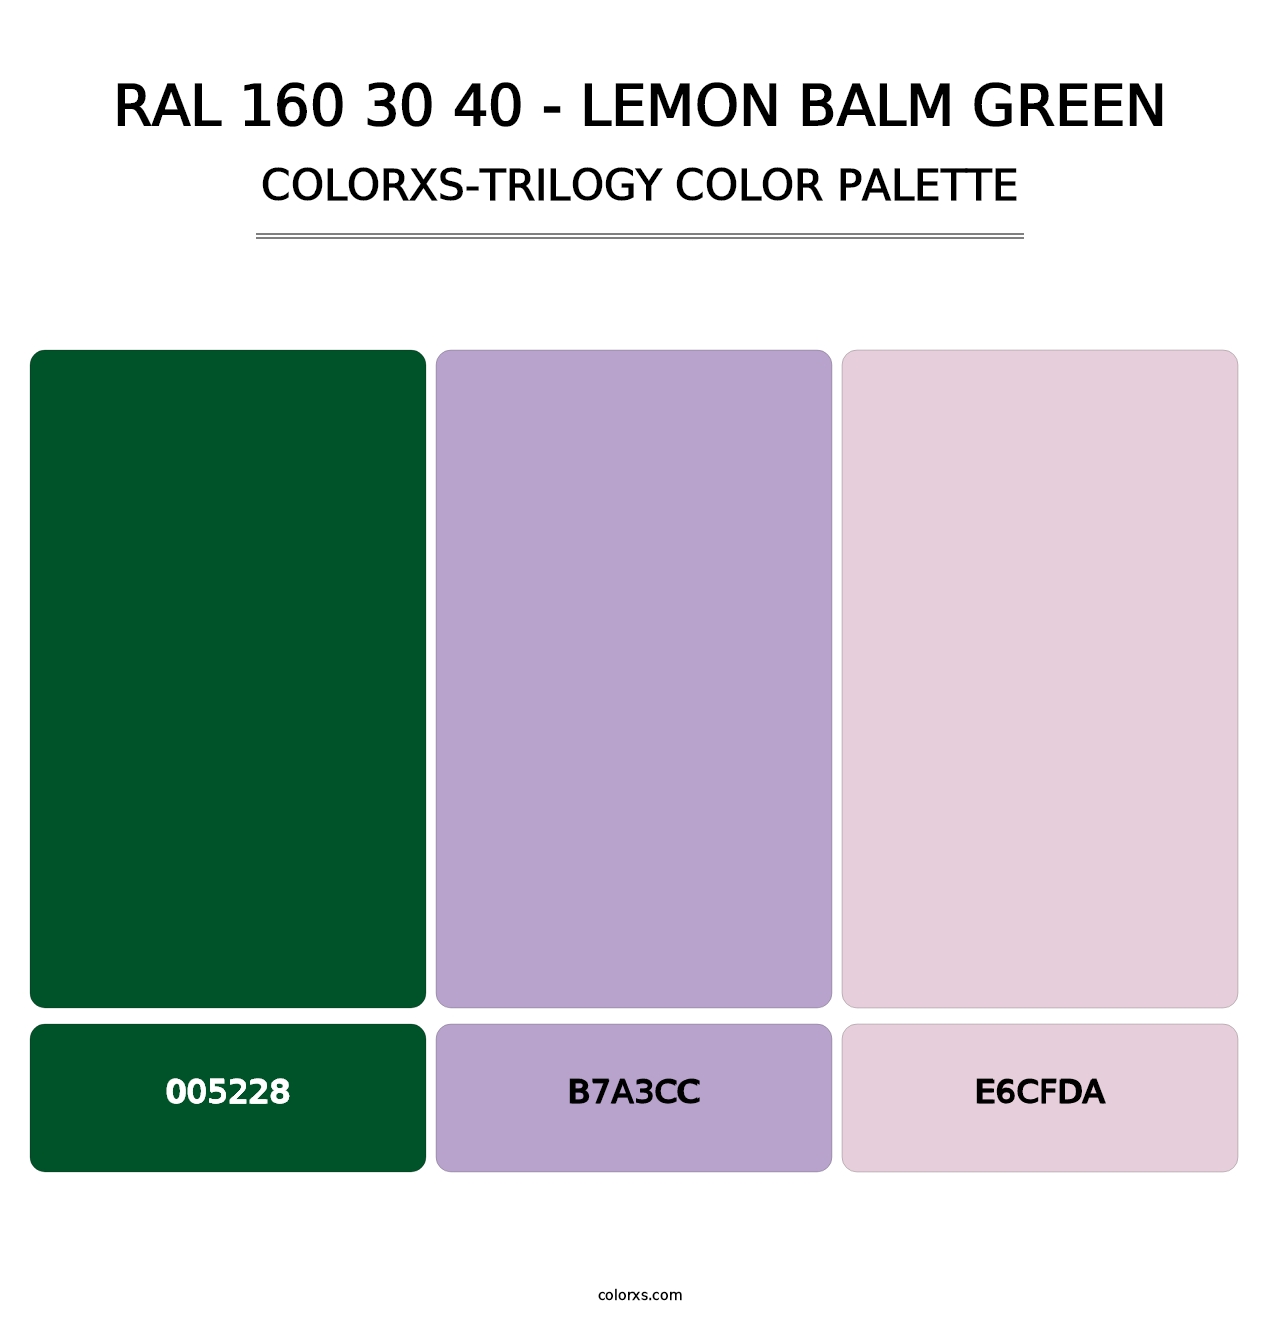 RAL 160 30 40 - Lemon Balm Green - Colorxs Trilogy Palette